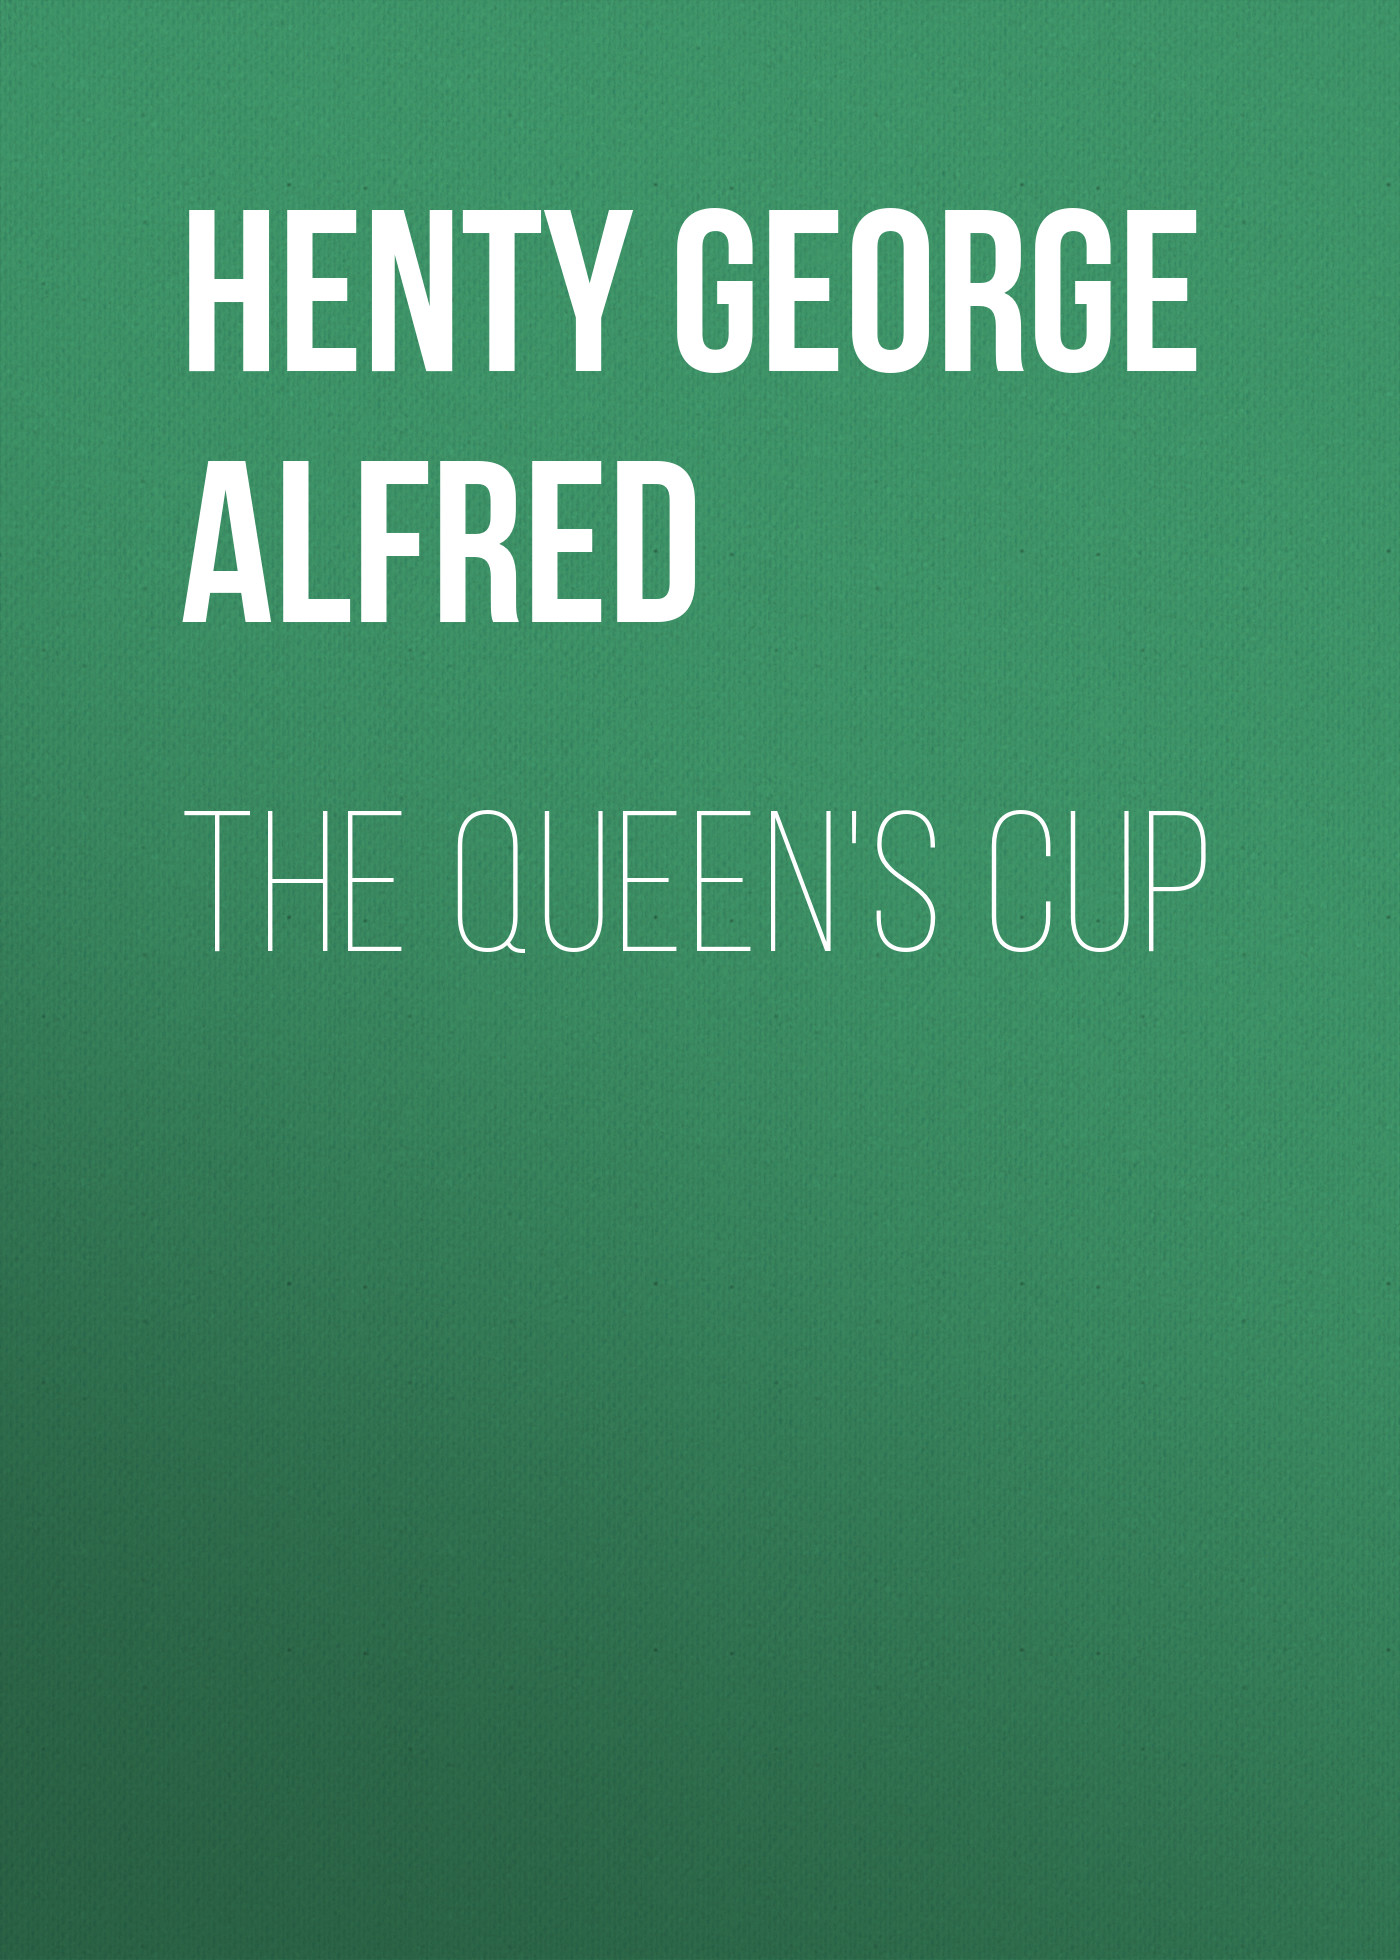 Книга The Queen's Cup из серии , созданная George Henty, написана в жанре Историческая фантастика, Зарубежная старинная литература, Зарубежная классика, Зарубежные детские книги, Исторические приключения. Стоимость электронной книги The Queen's Cup с идентификатором 36322772 составляет 0 руб.